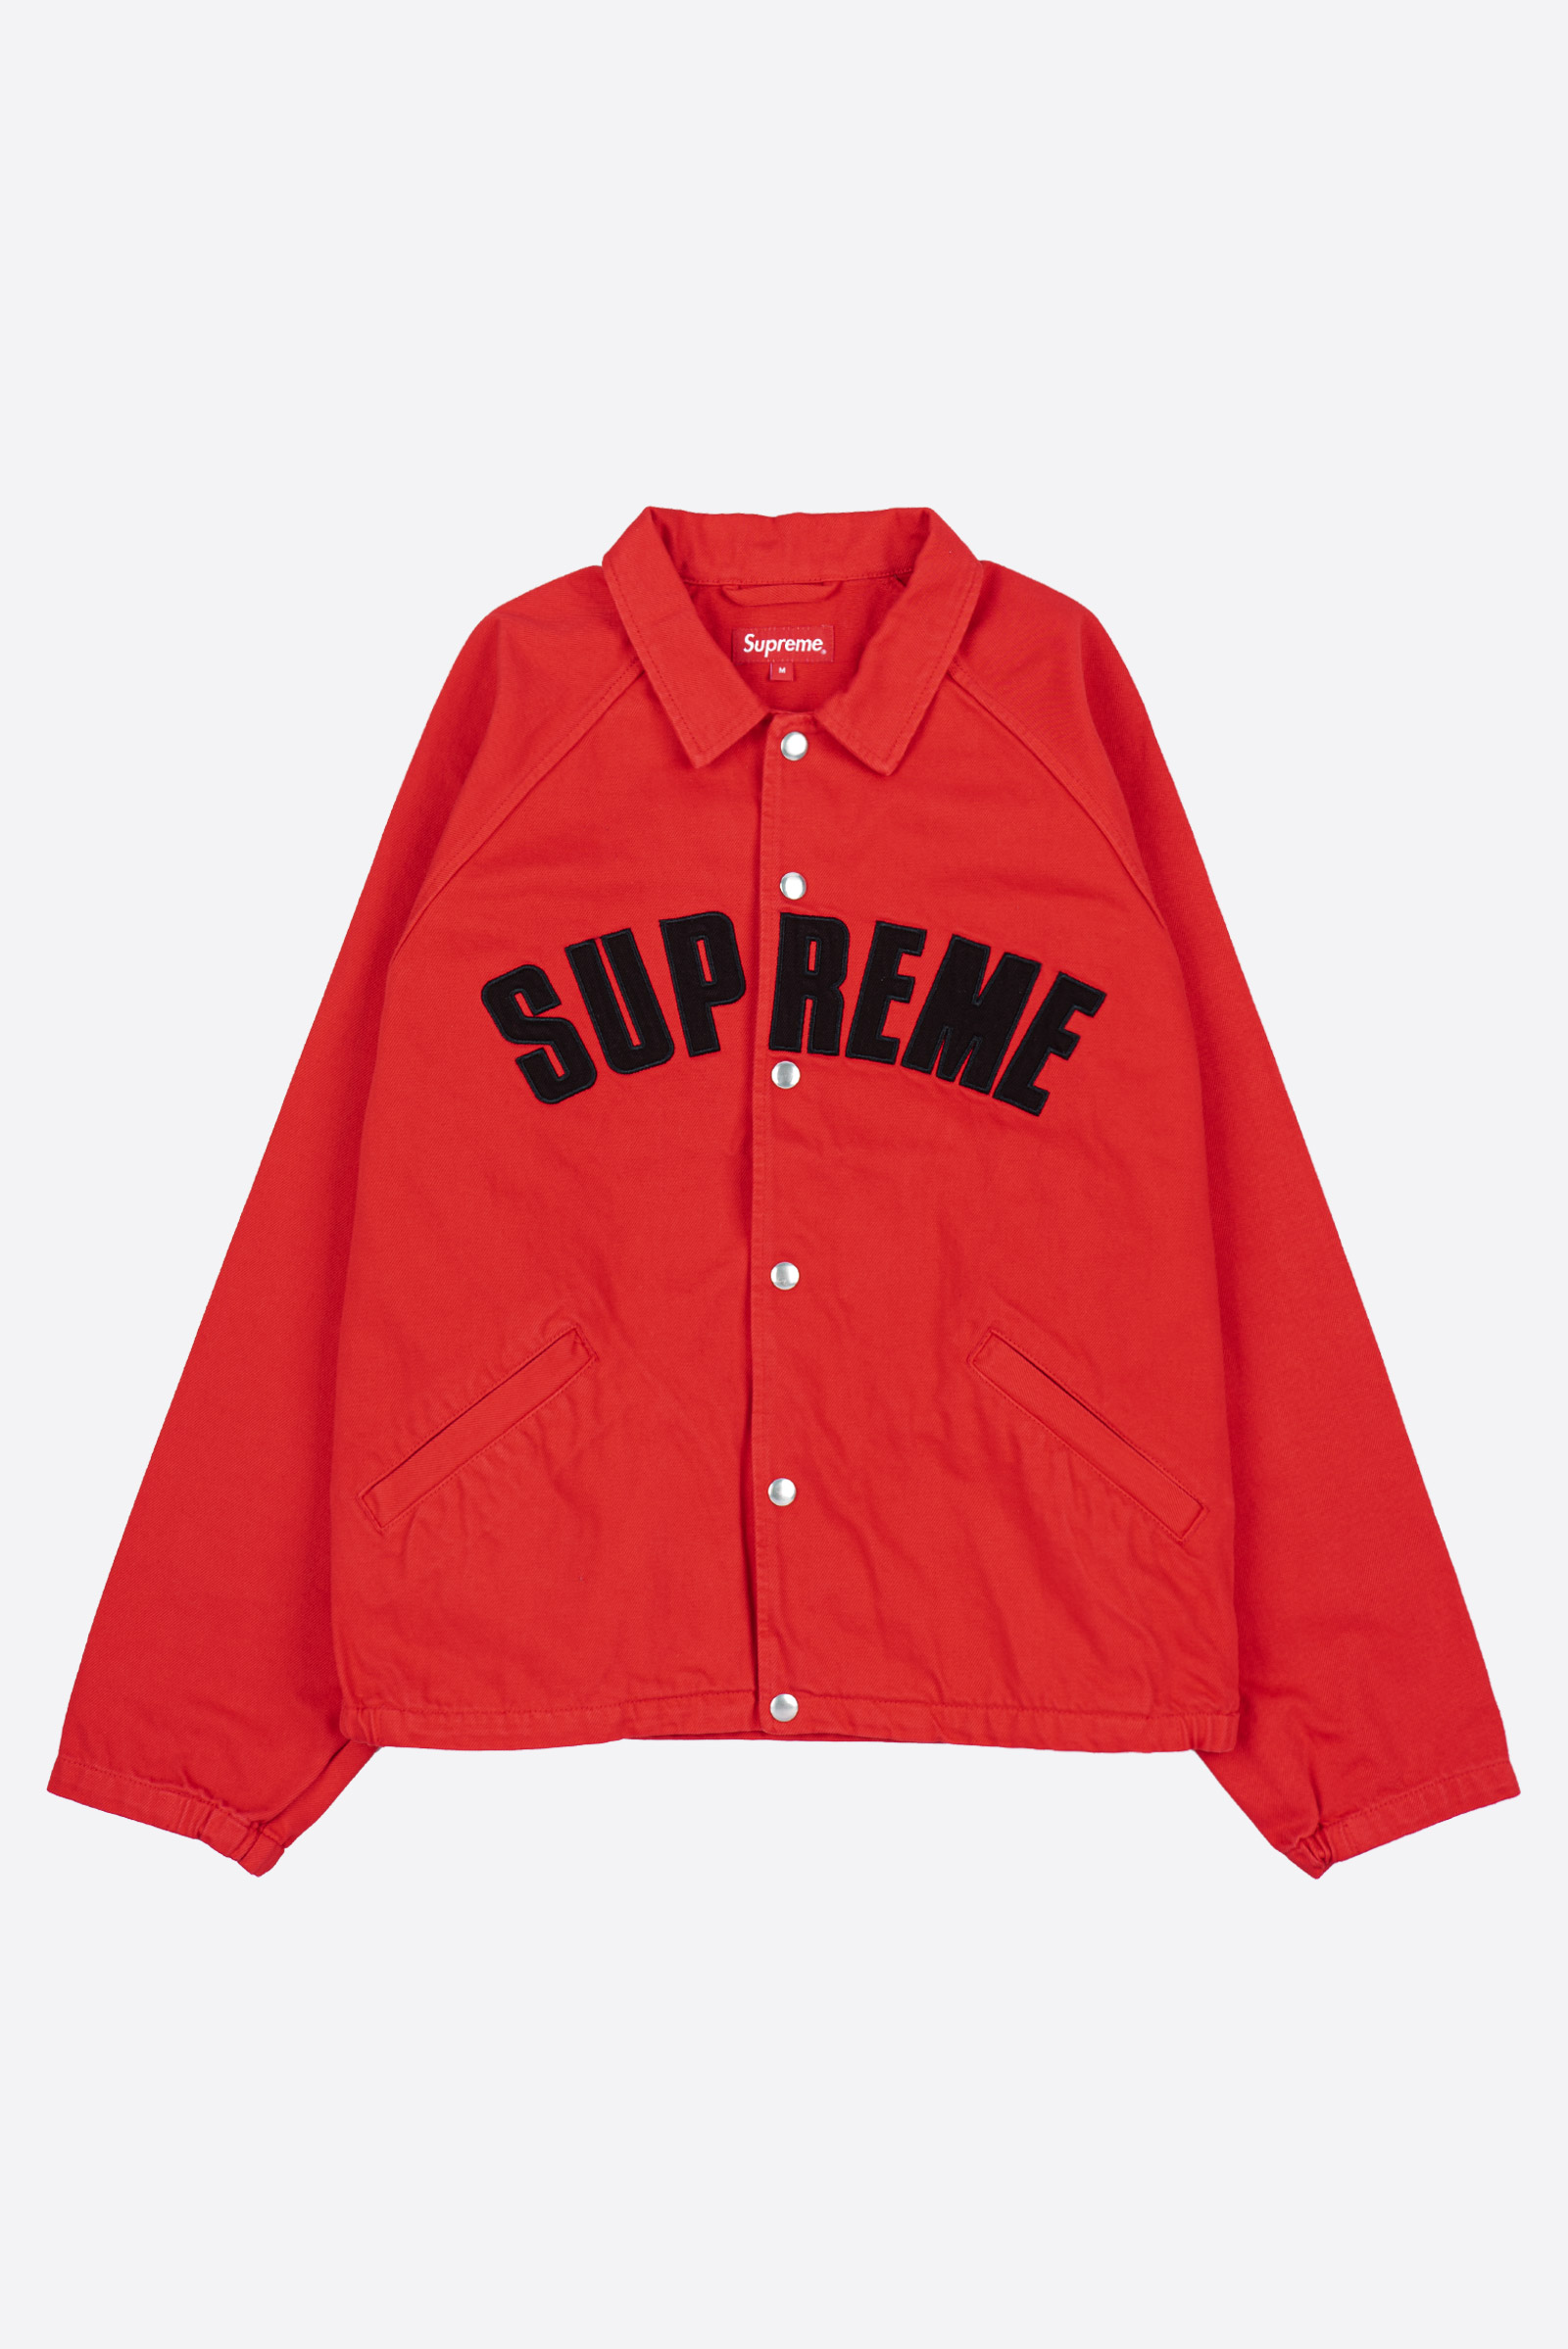 専用 supreme snap front jacket